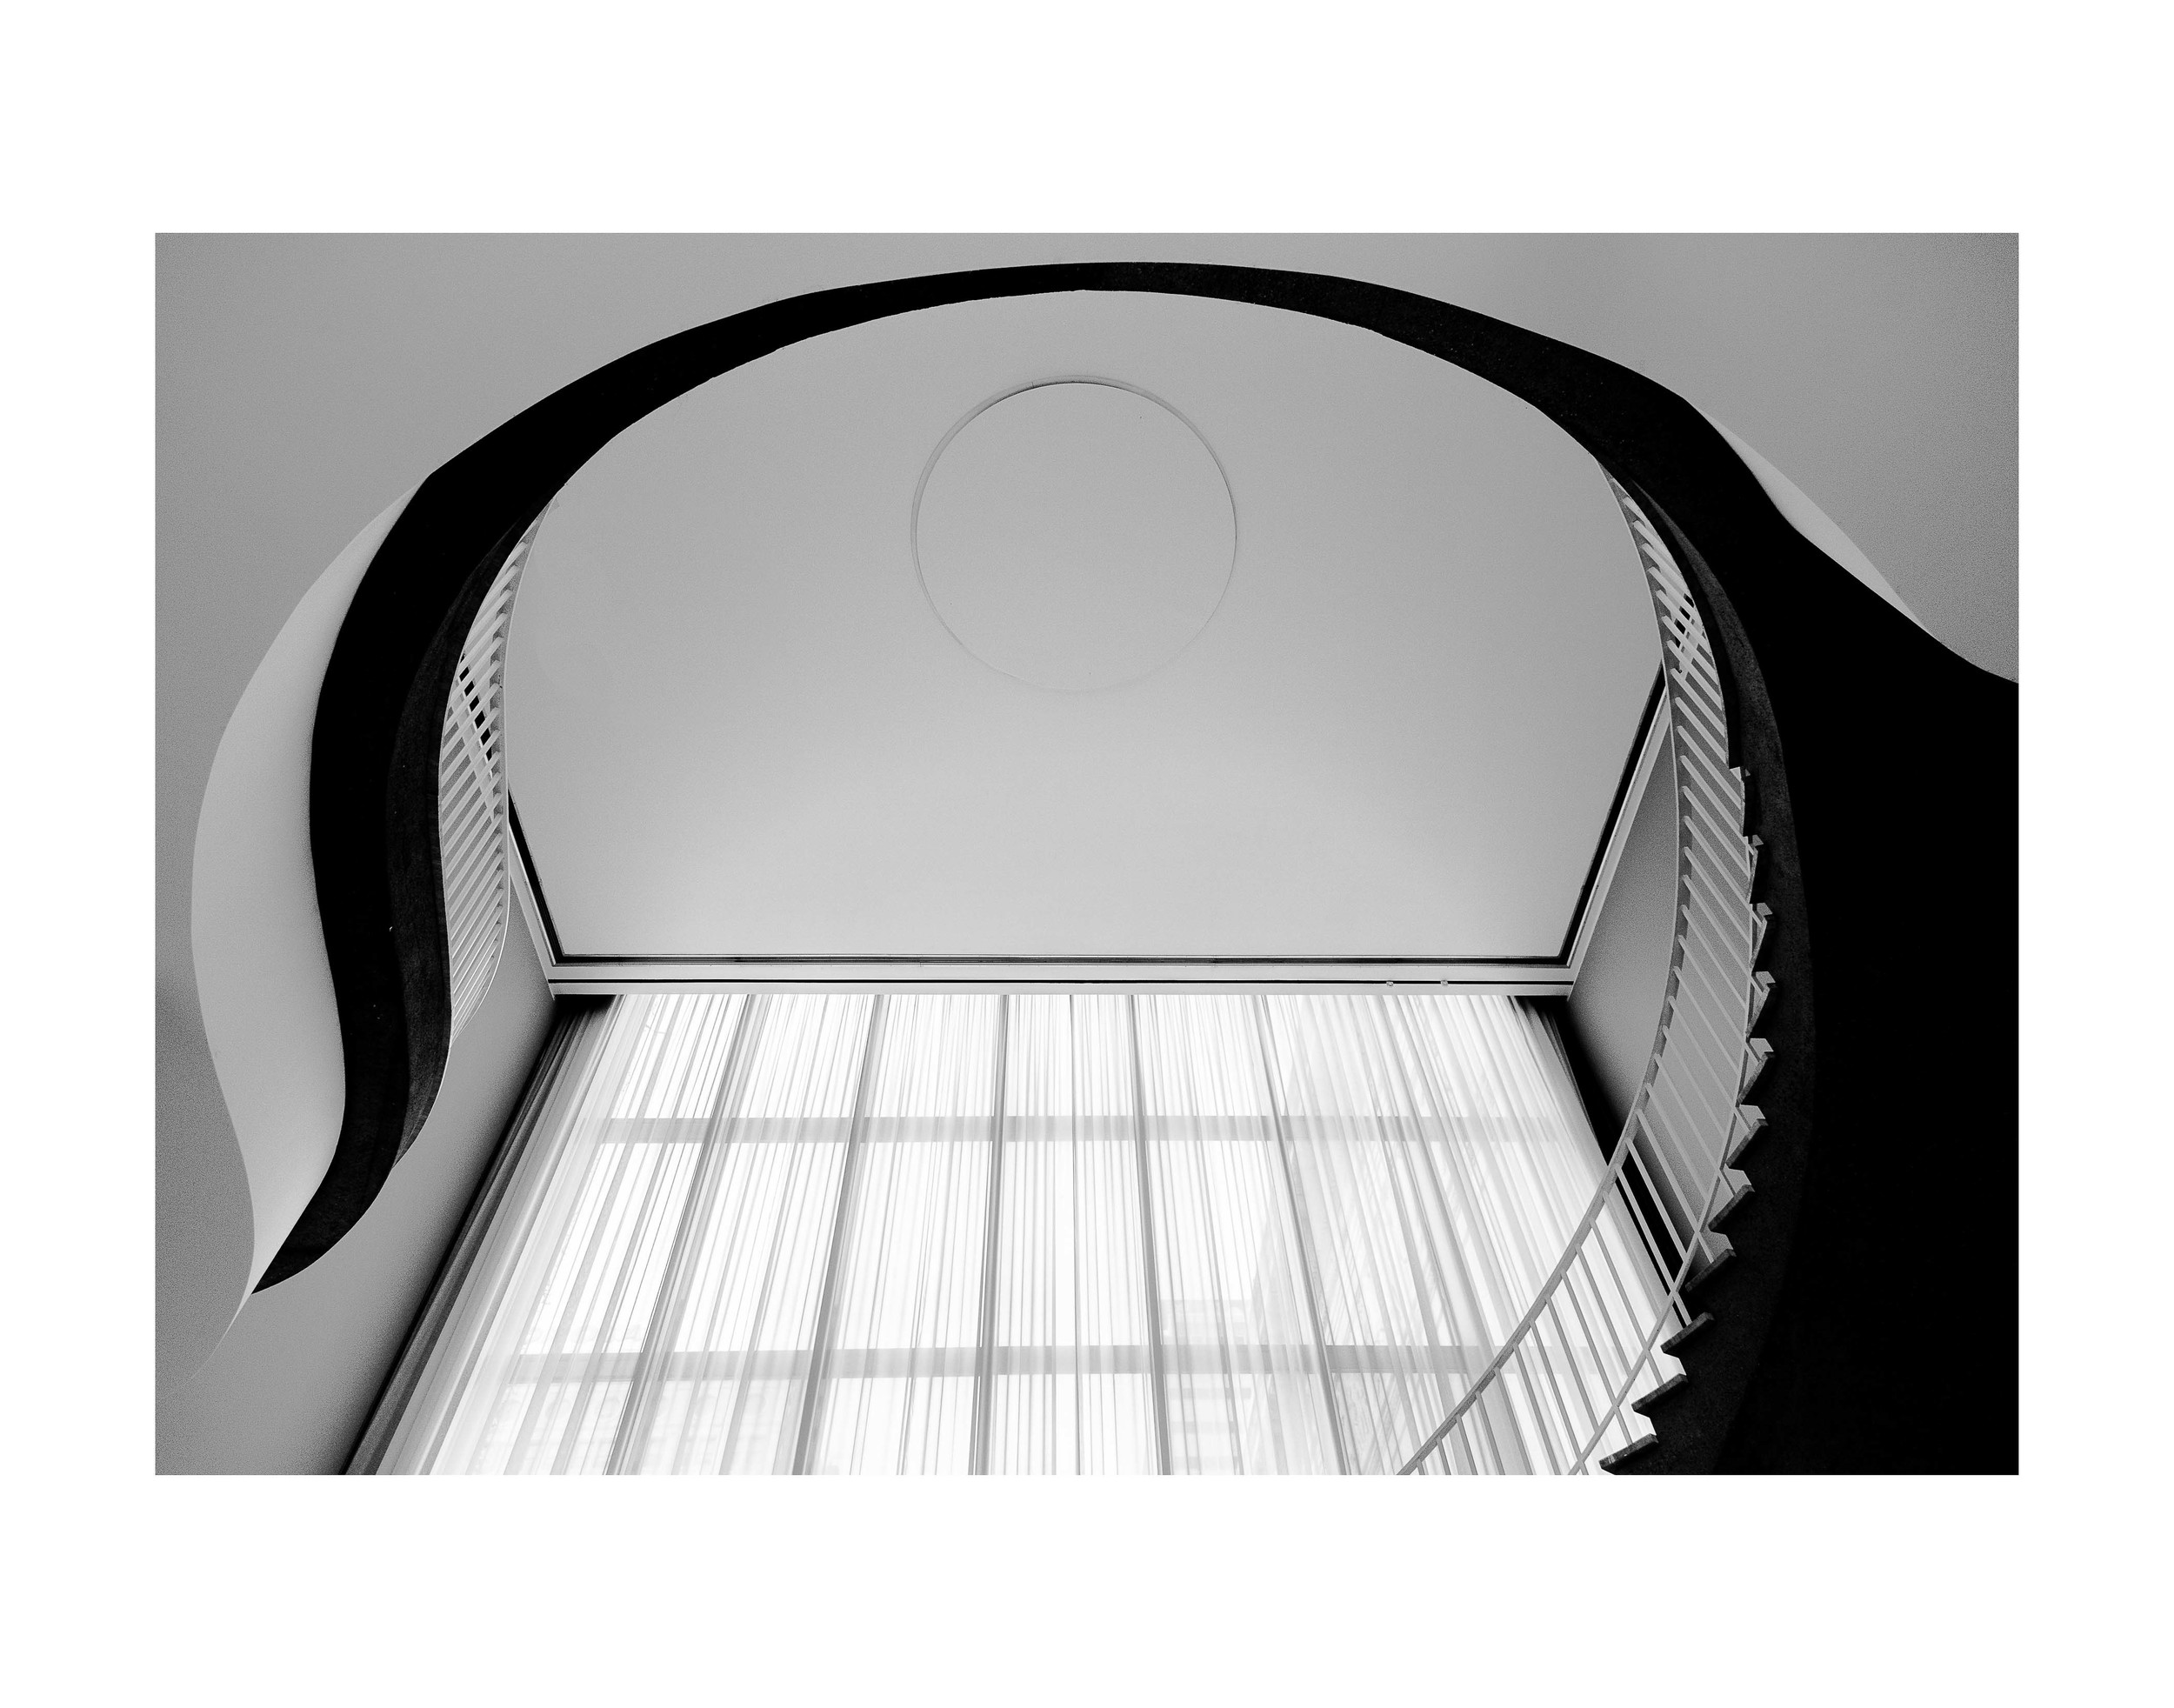  Art Institute Staircase Study. 11x14 framed. $75.&nbsp; 